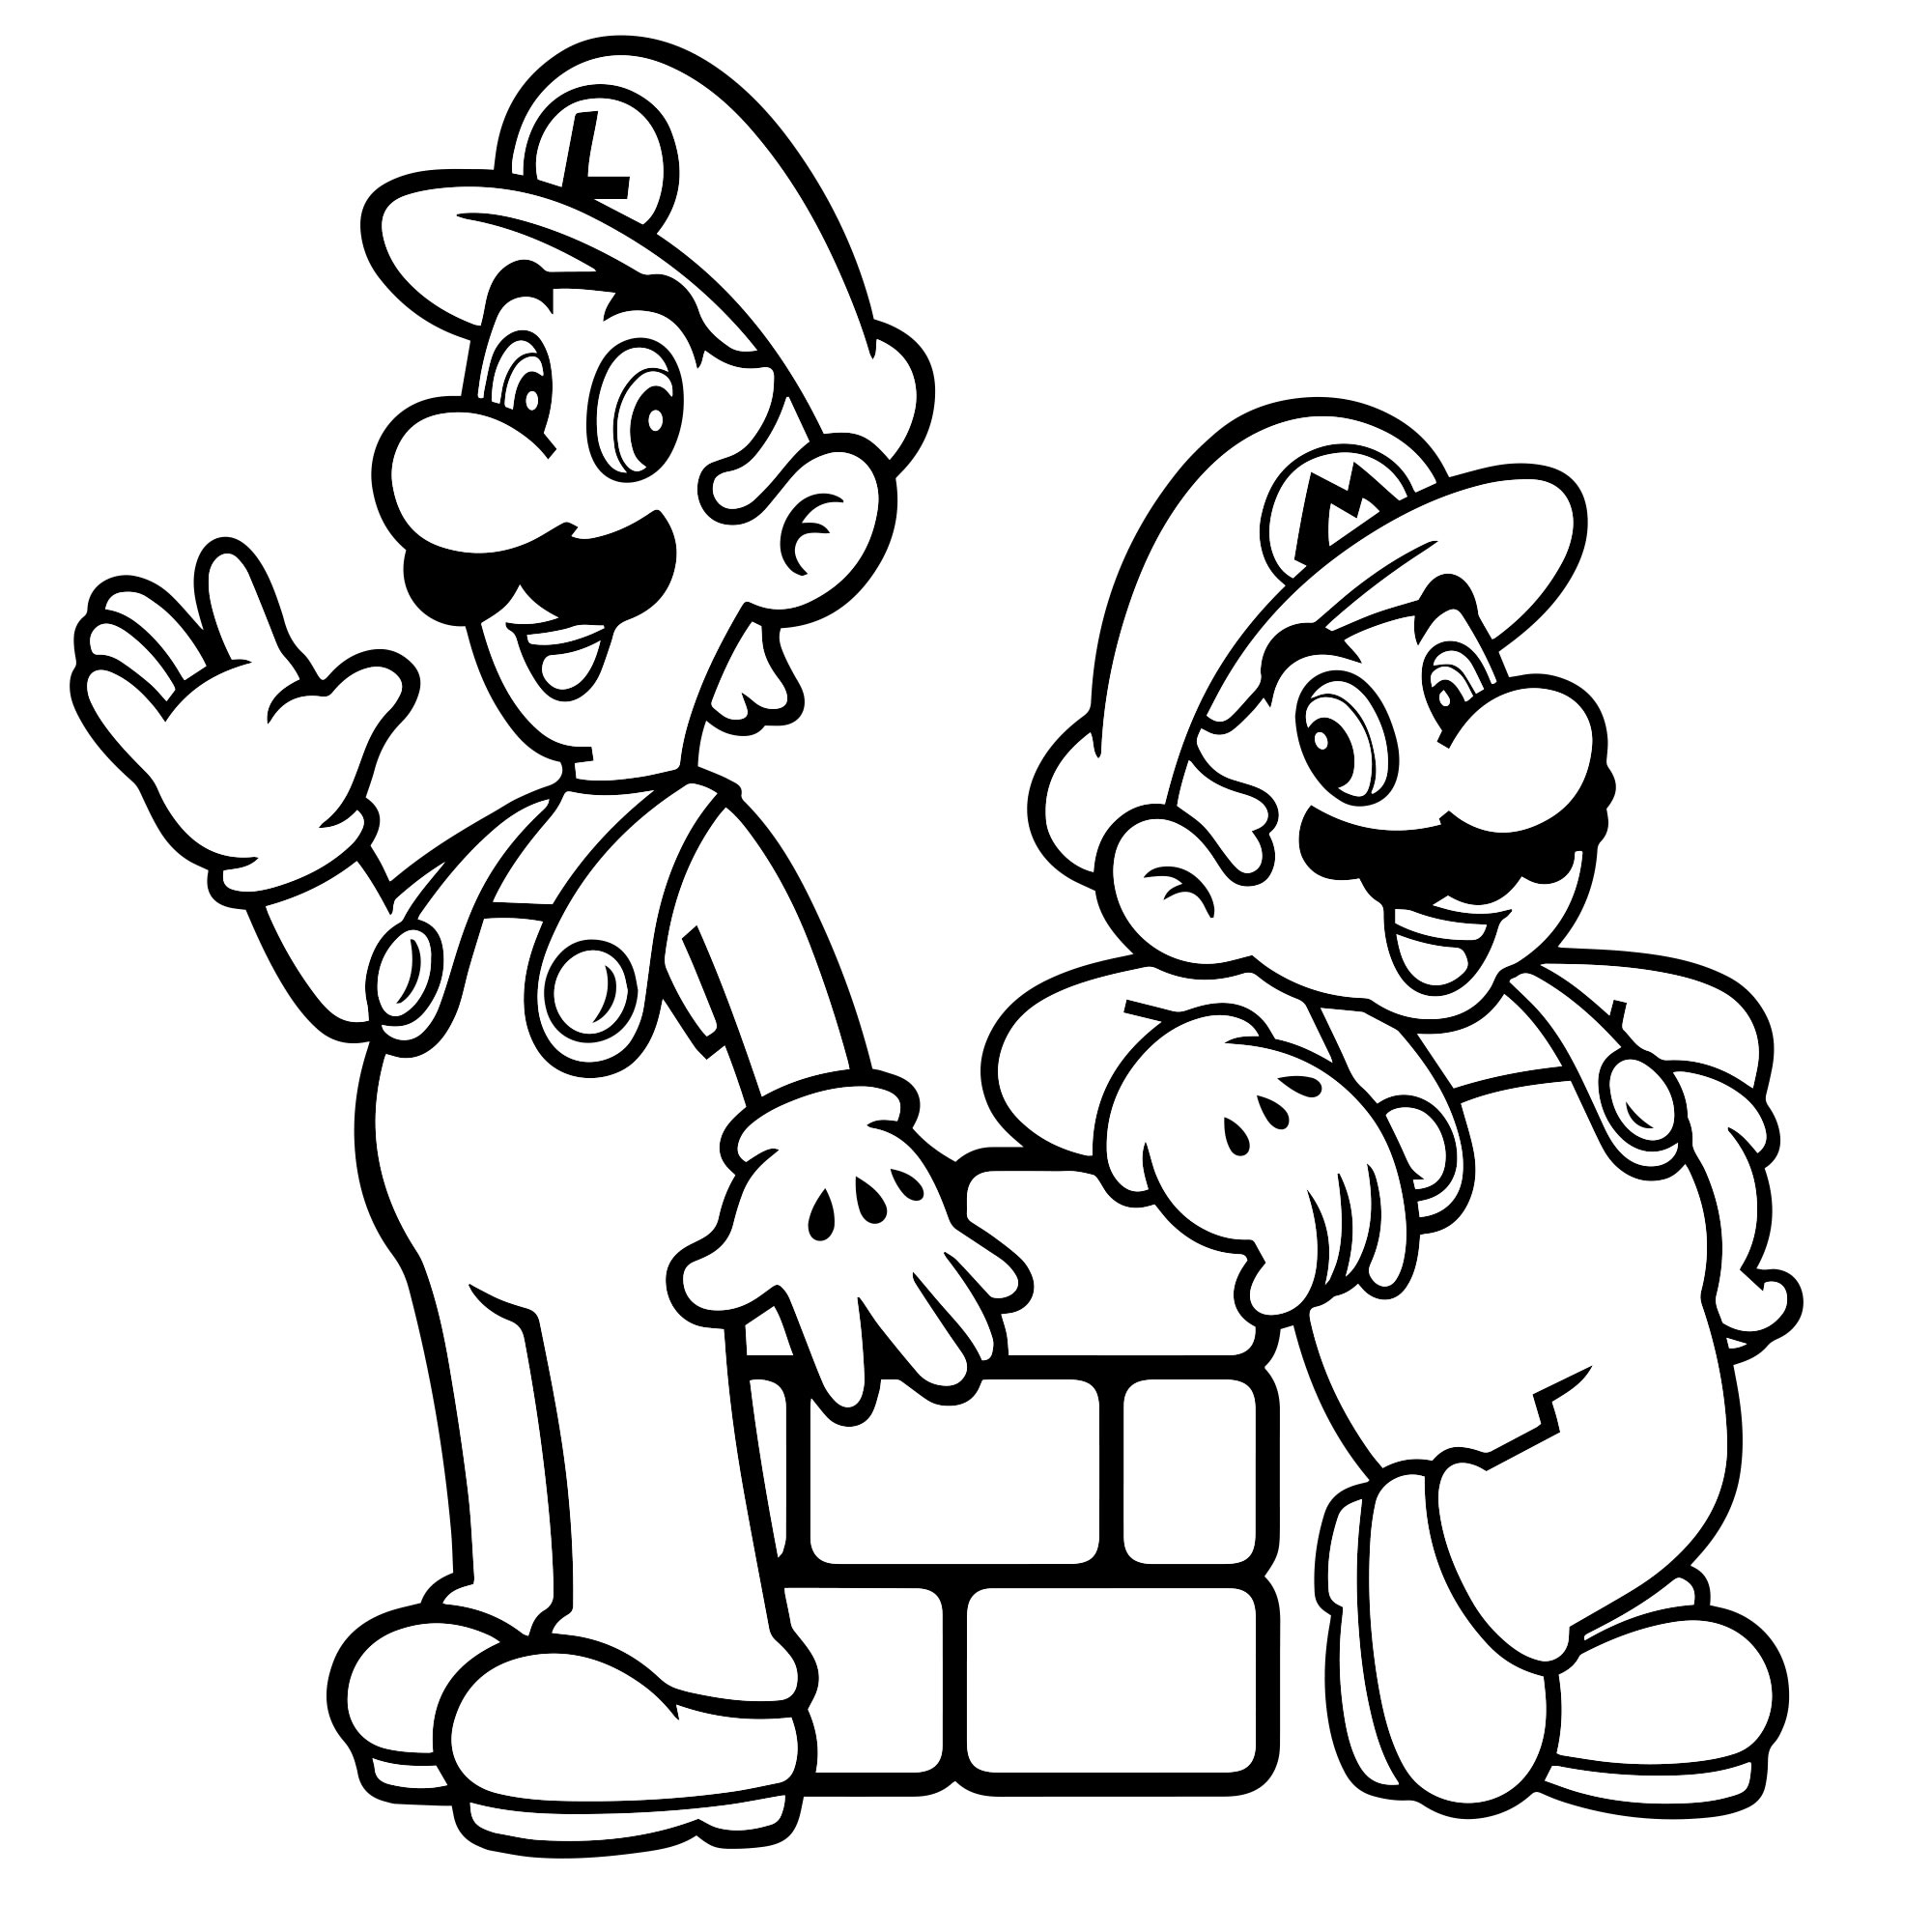 Братья Марио раскраска для детей